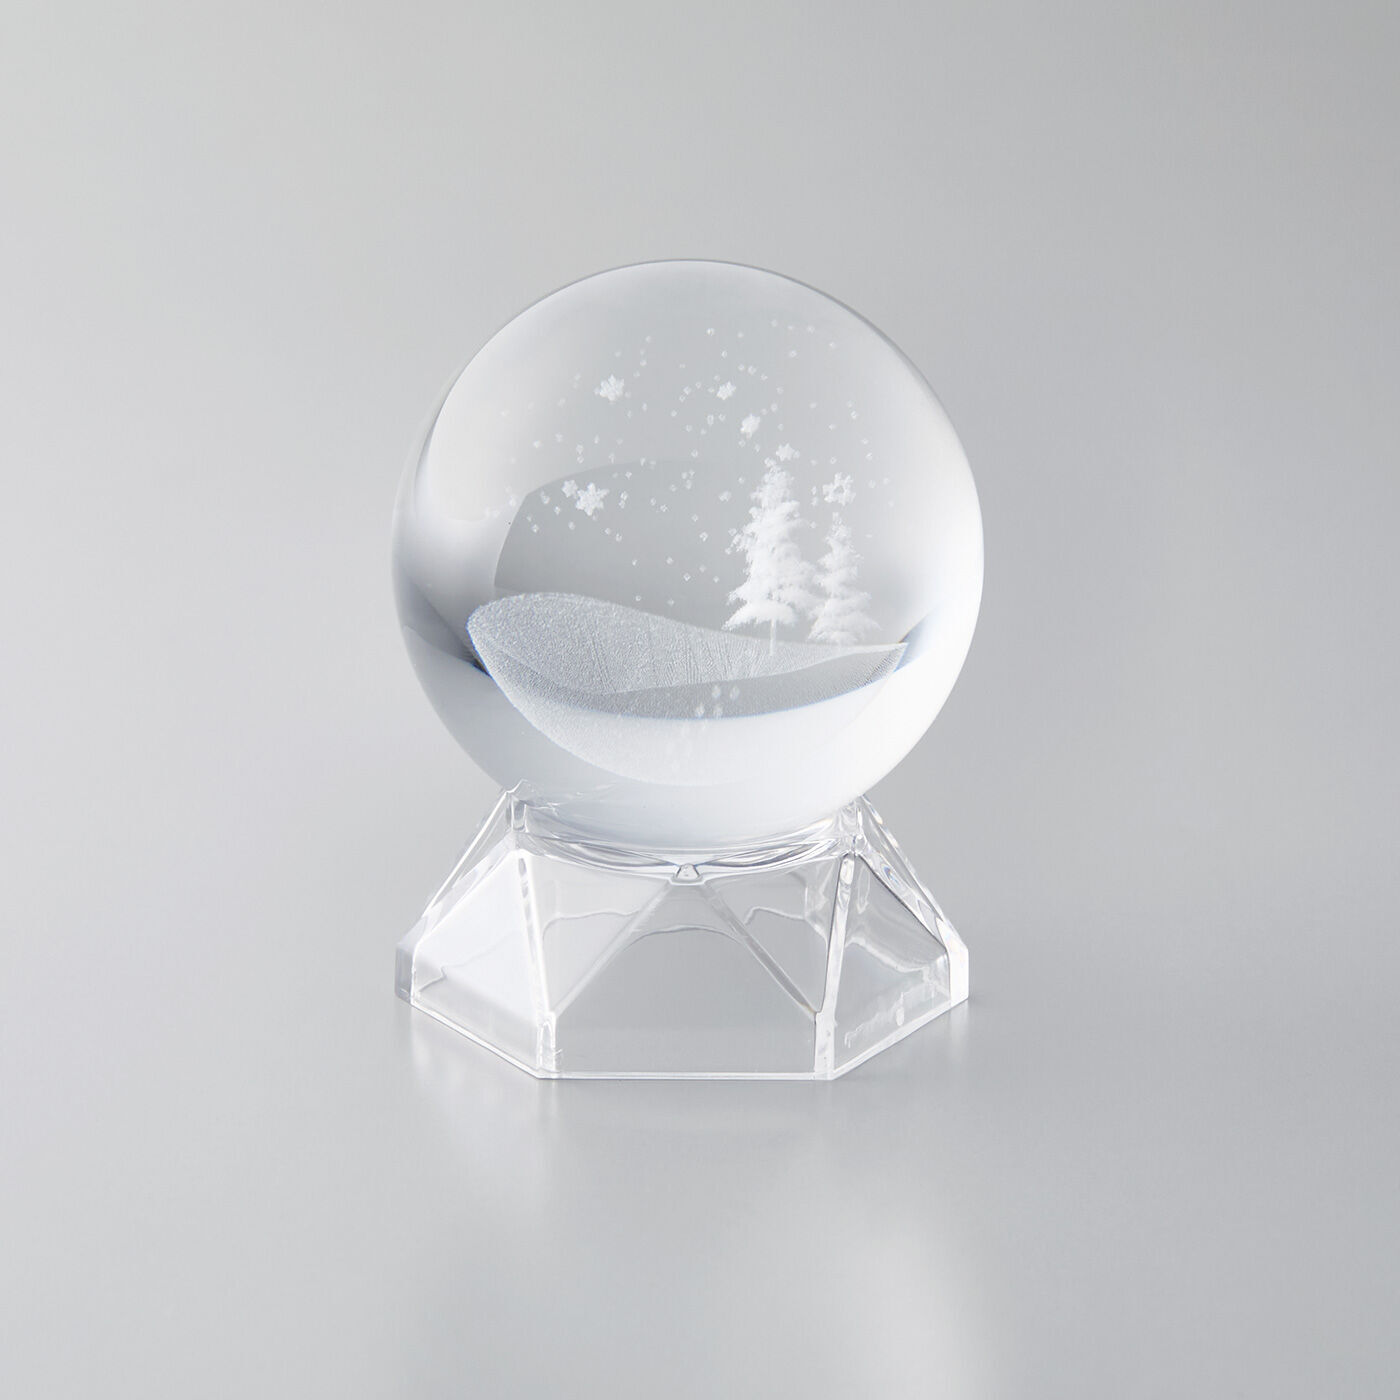 SeeMONO|3つの幸運な夢に誘（いざな）う ガラスのオブジェの会|雪……「純粋な心のシンボル」